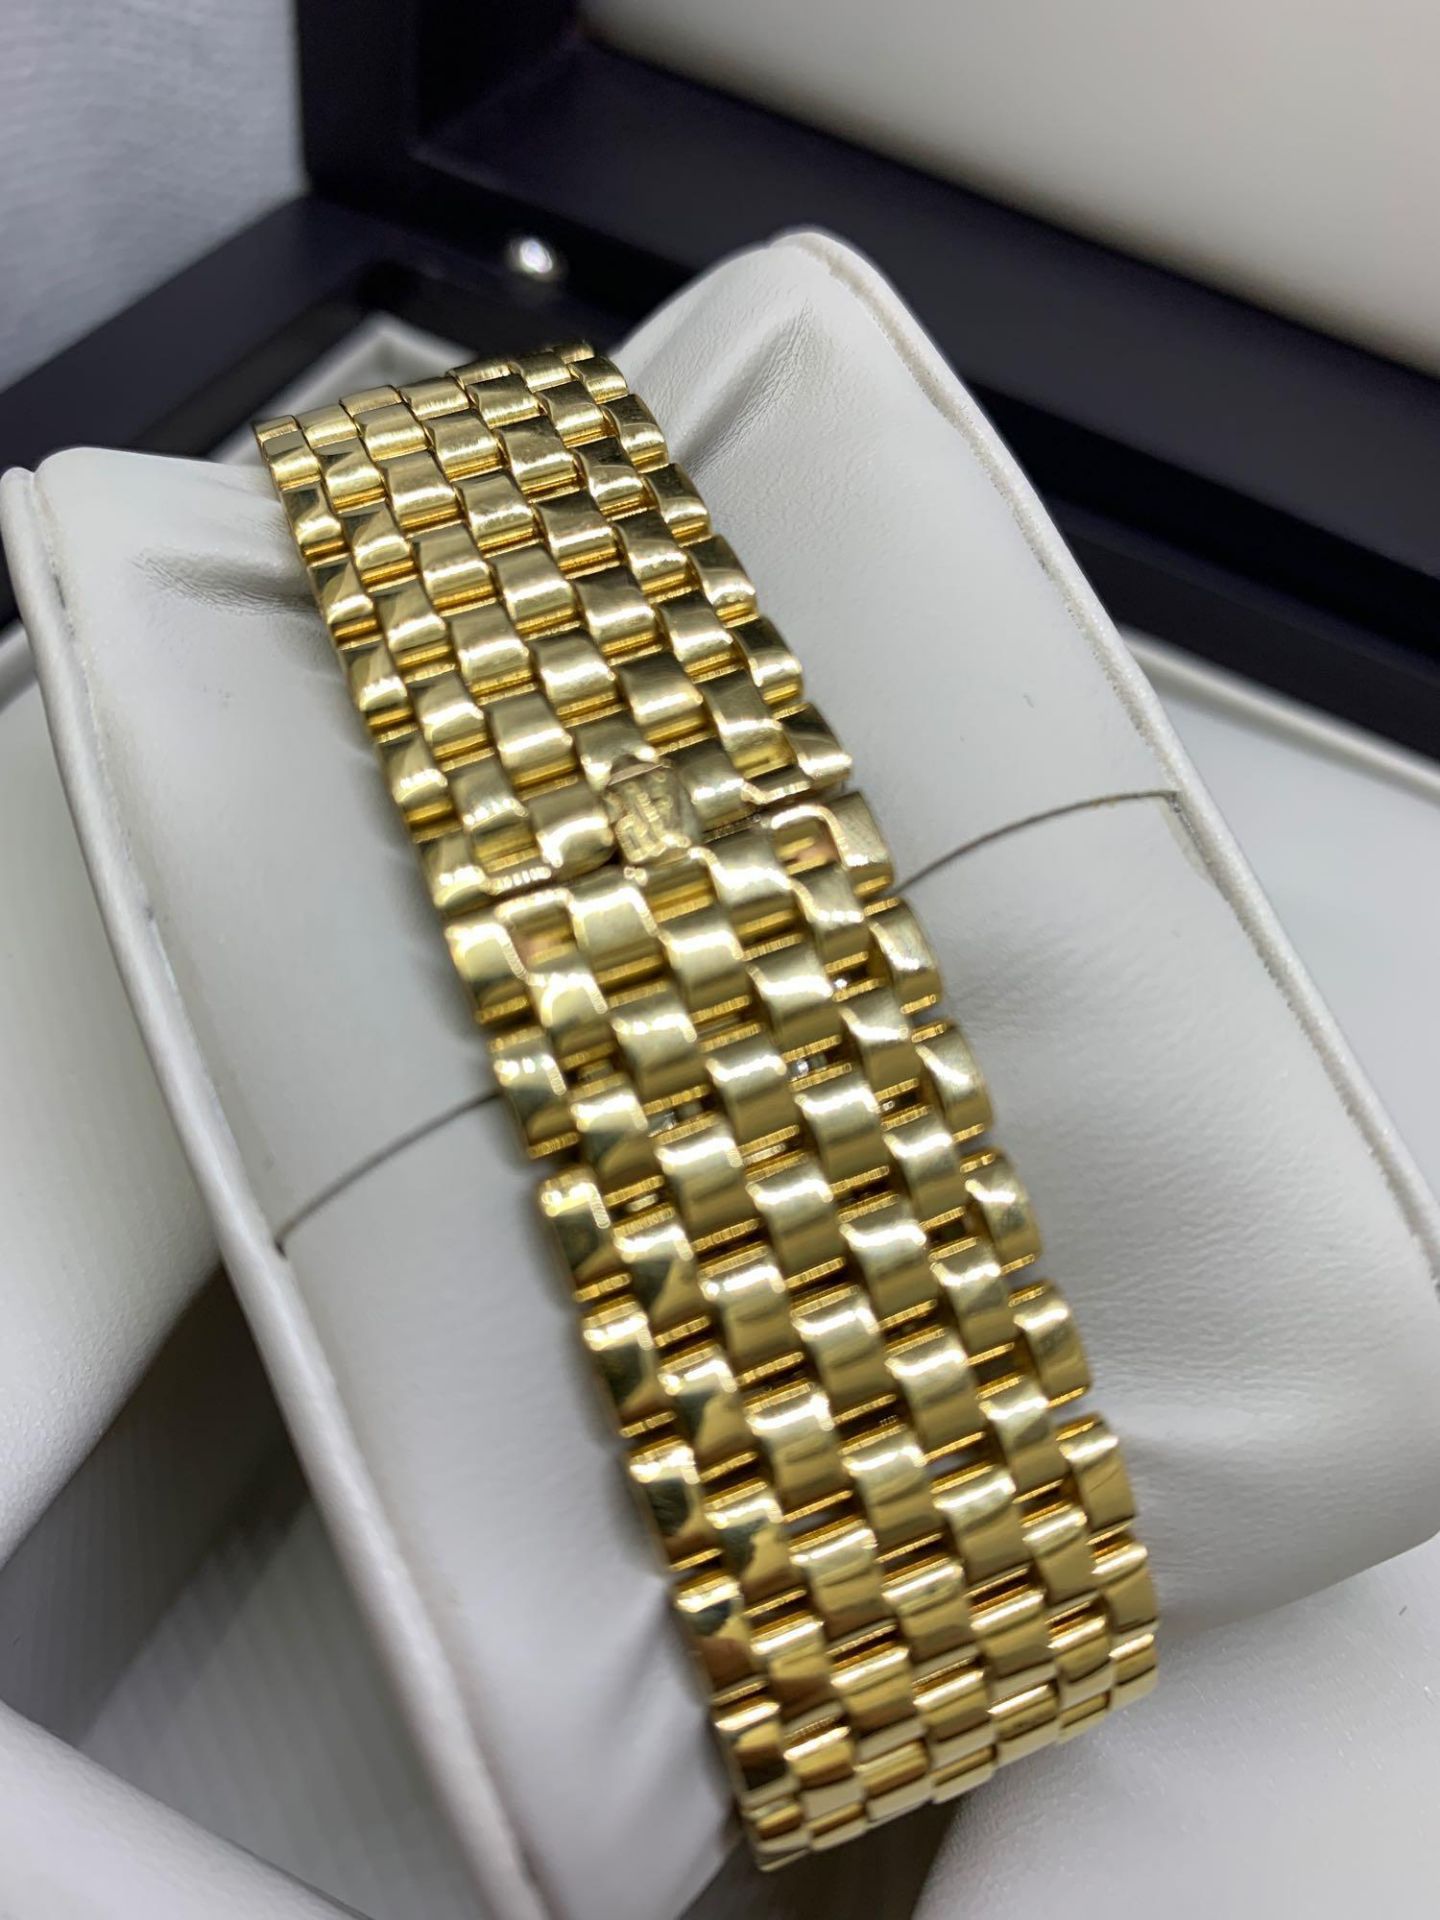 Audemars Piguet 18ct Gold watch 95 Grams With a Audemars box - Image 6 of 10